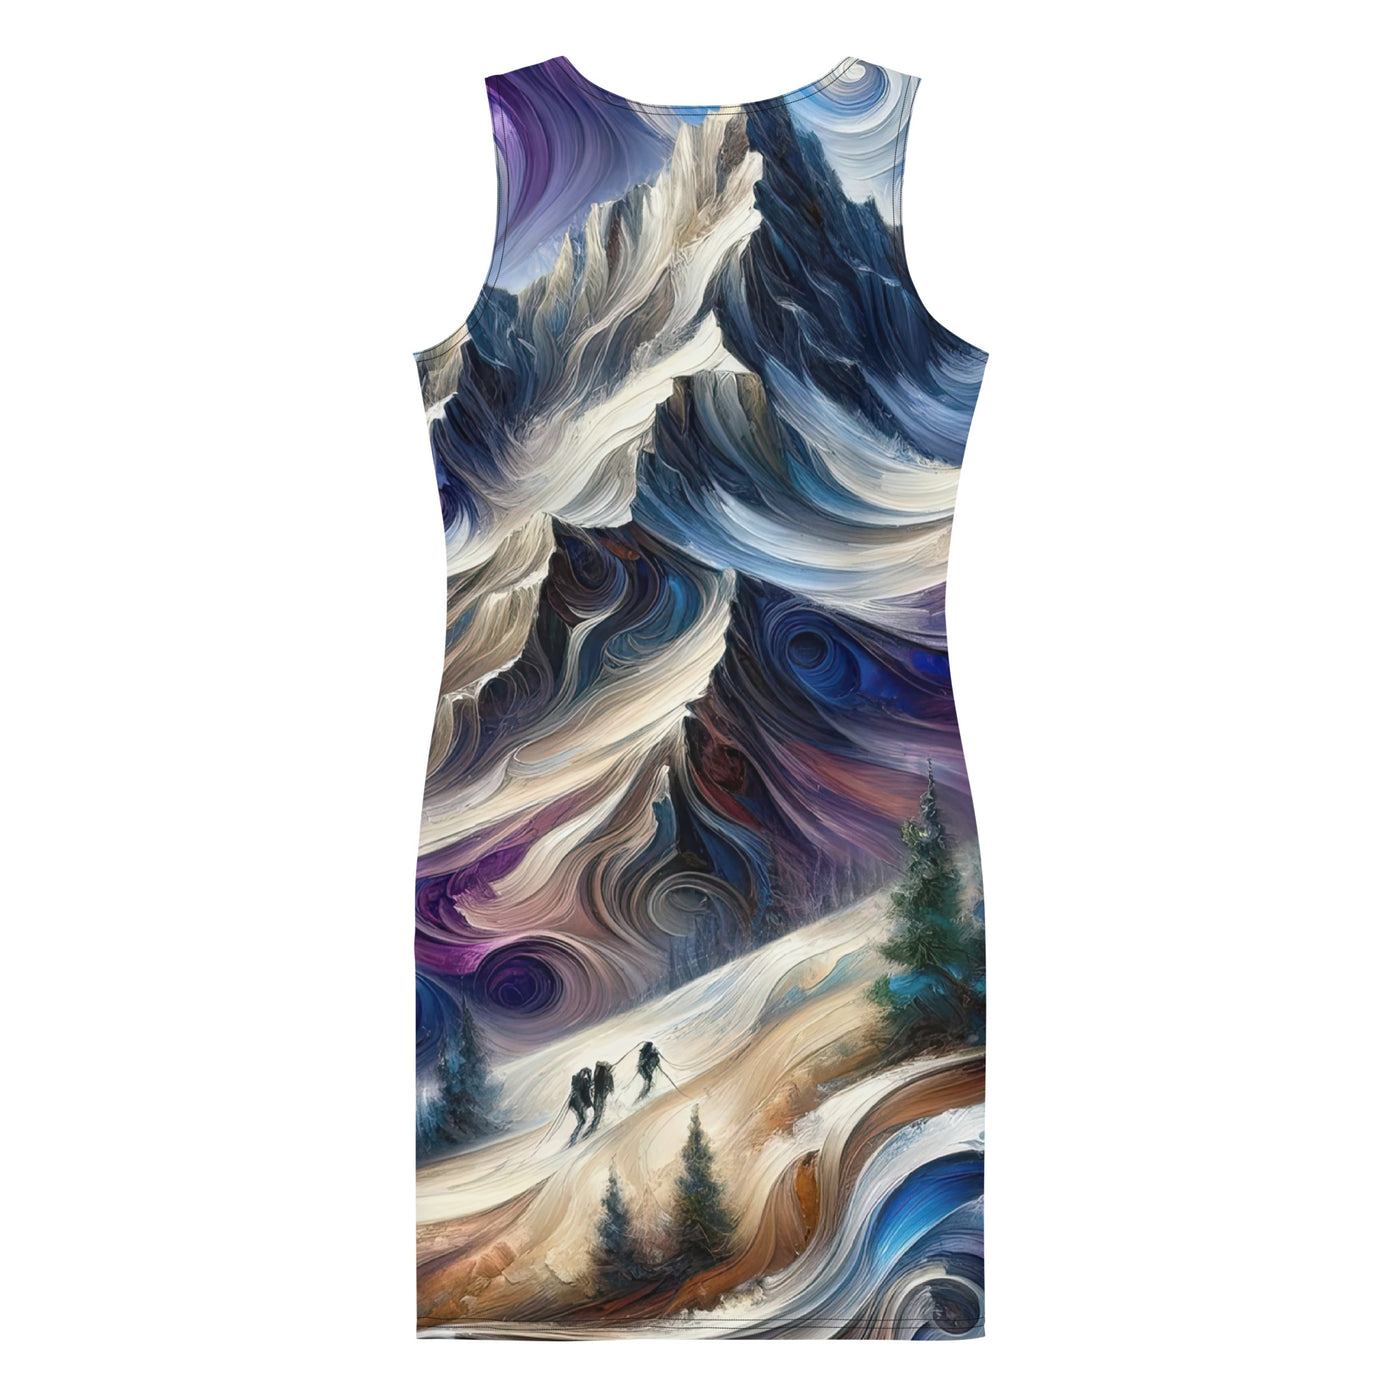 Ölgemälde der Alpen in abstraktem Expressionismus, wilde Naturdarstellung - Langes Damen Kleid (All-Over Print) berge xxx yyy zzz